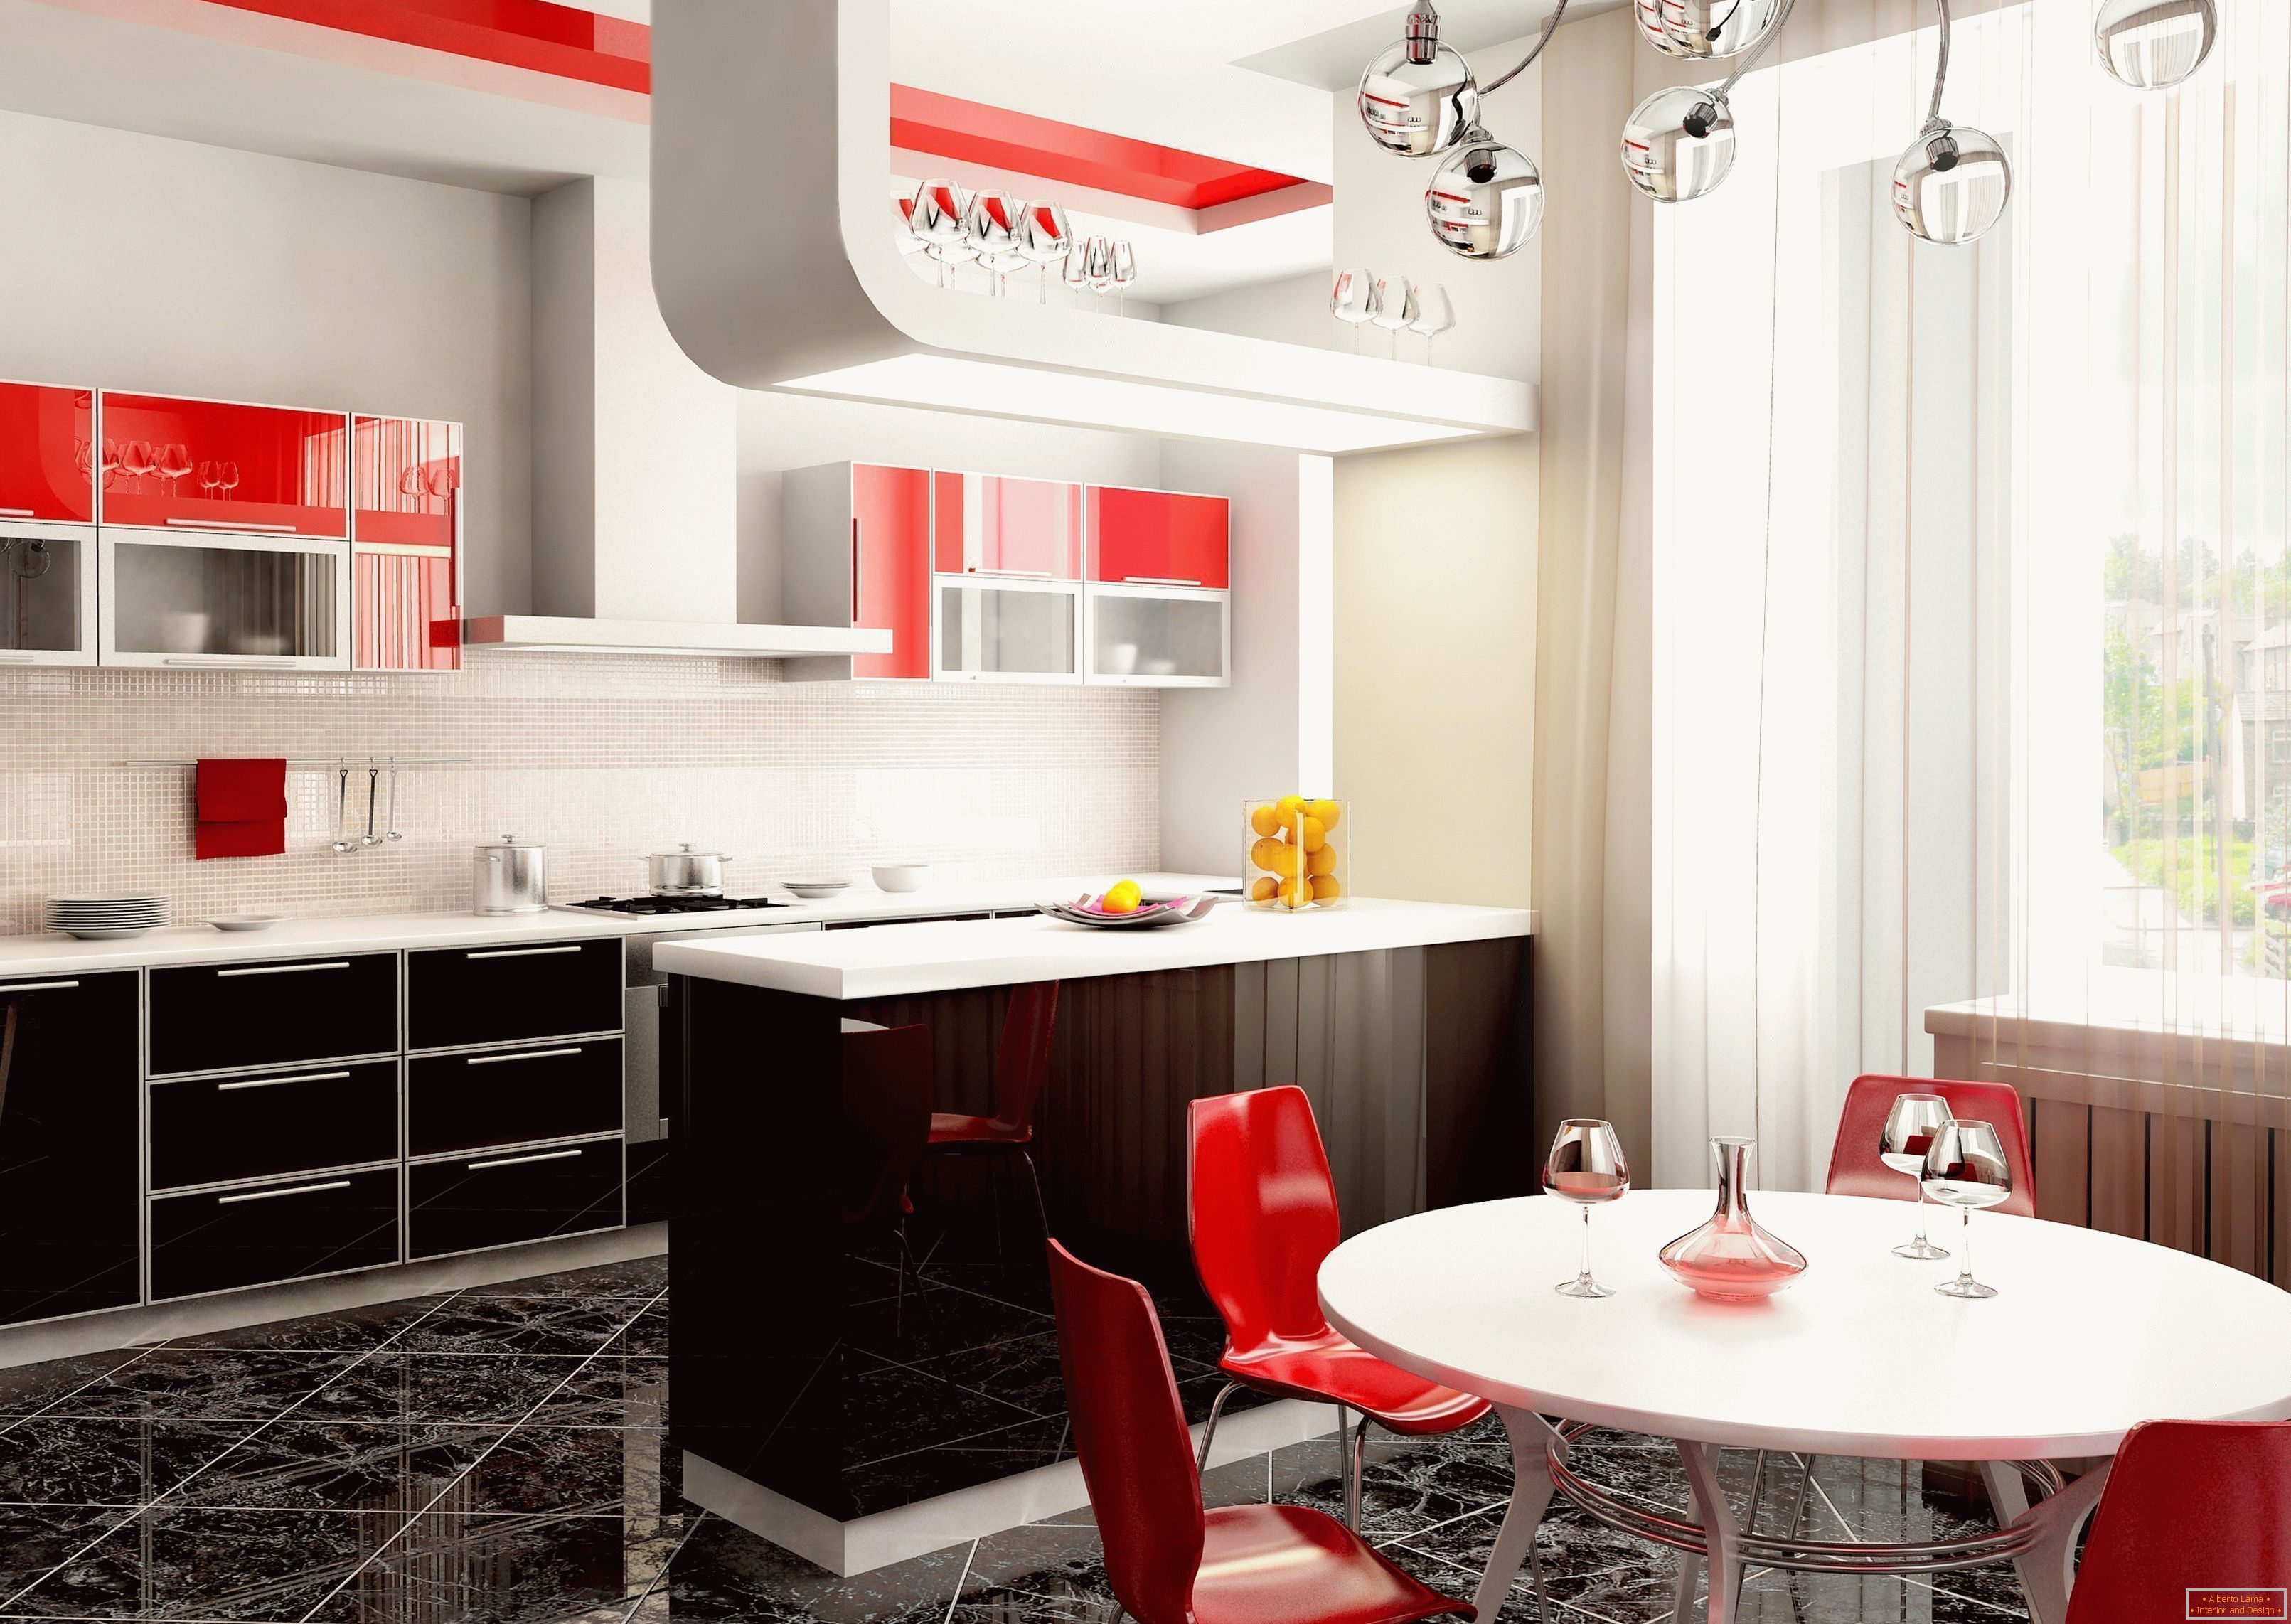 Svijetli interijer kuhinje u stanu s crvenim naglascima